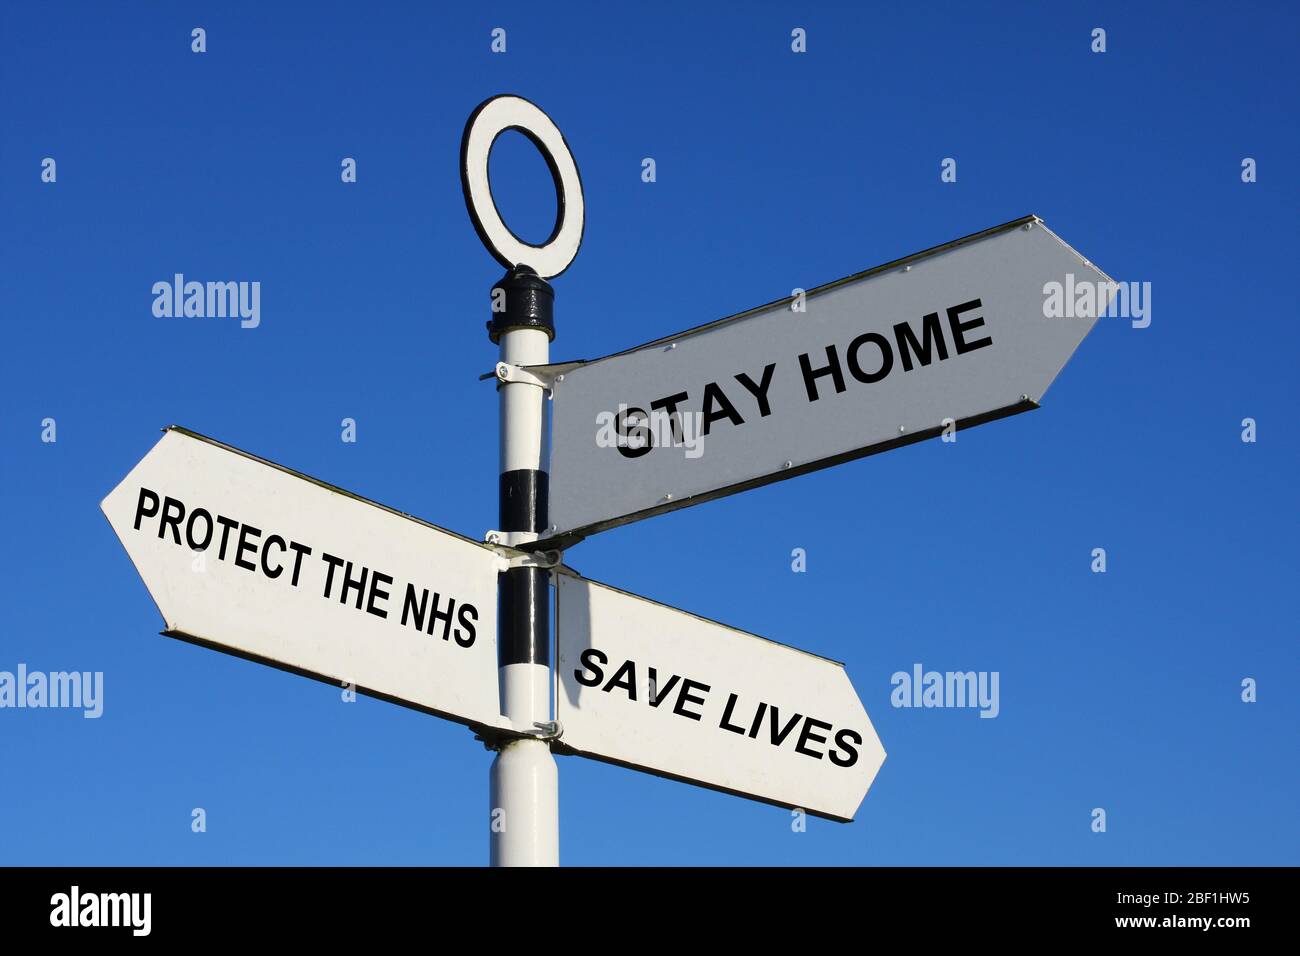 Digital verändertes Bild, das die öffentliche Informationsbotschaft der britischen Regierung während der Sperrung des Covid-19-Coronavirus in Großbritannien zeigt Stockfoto